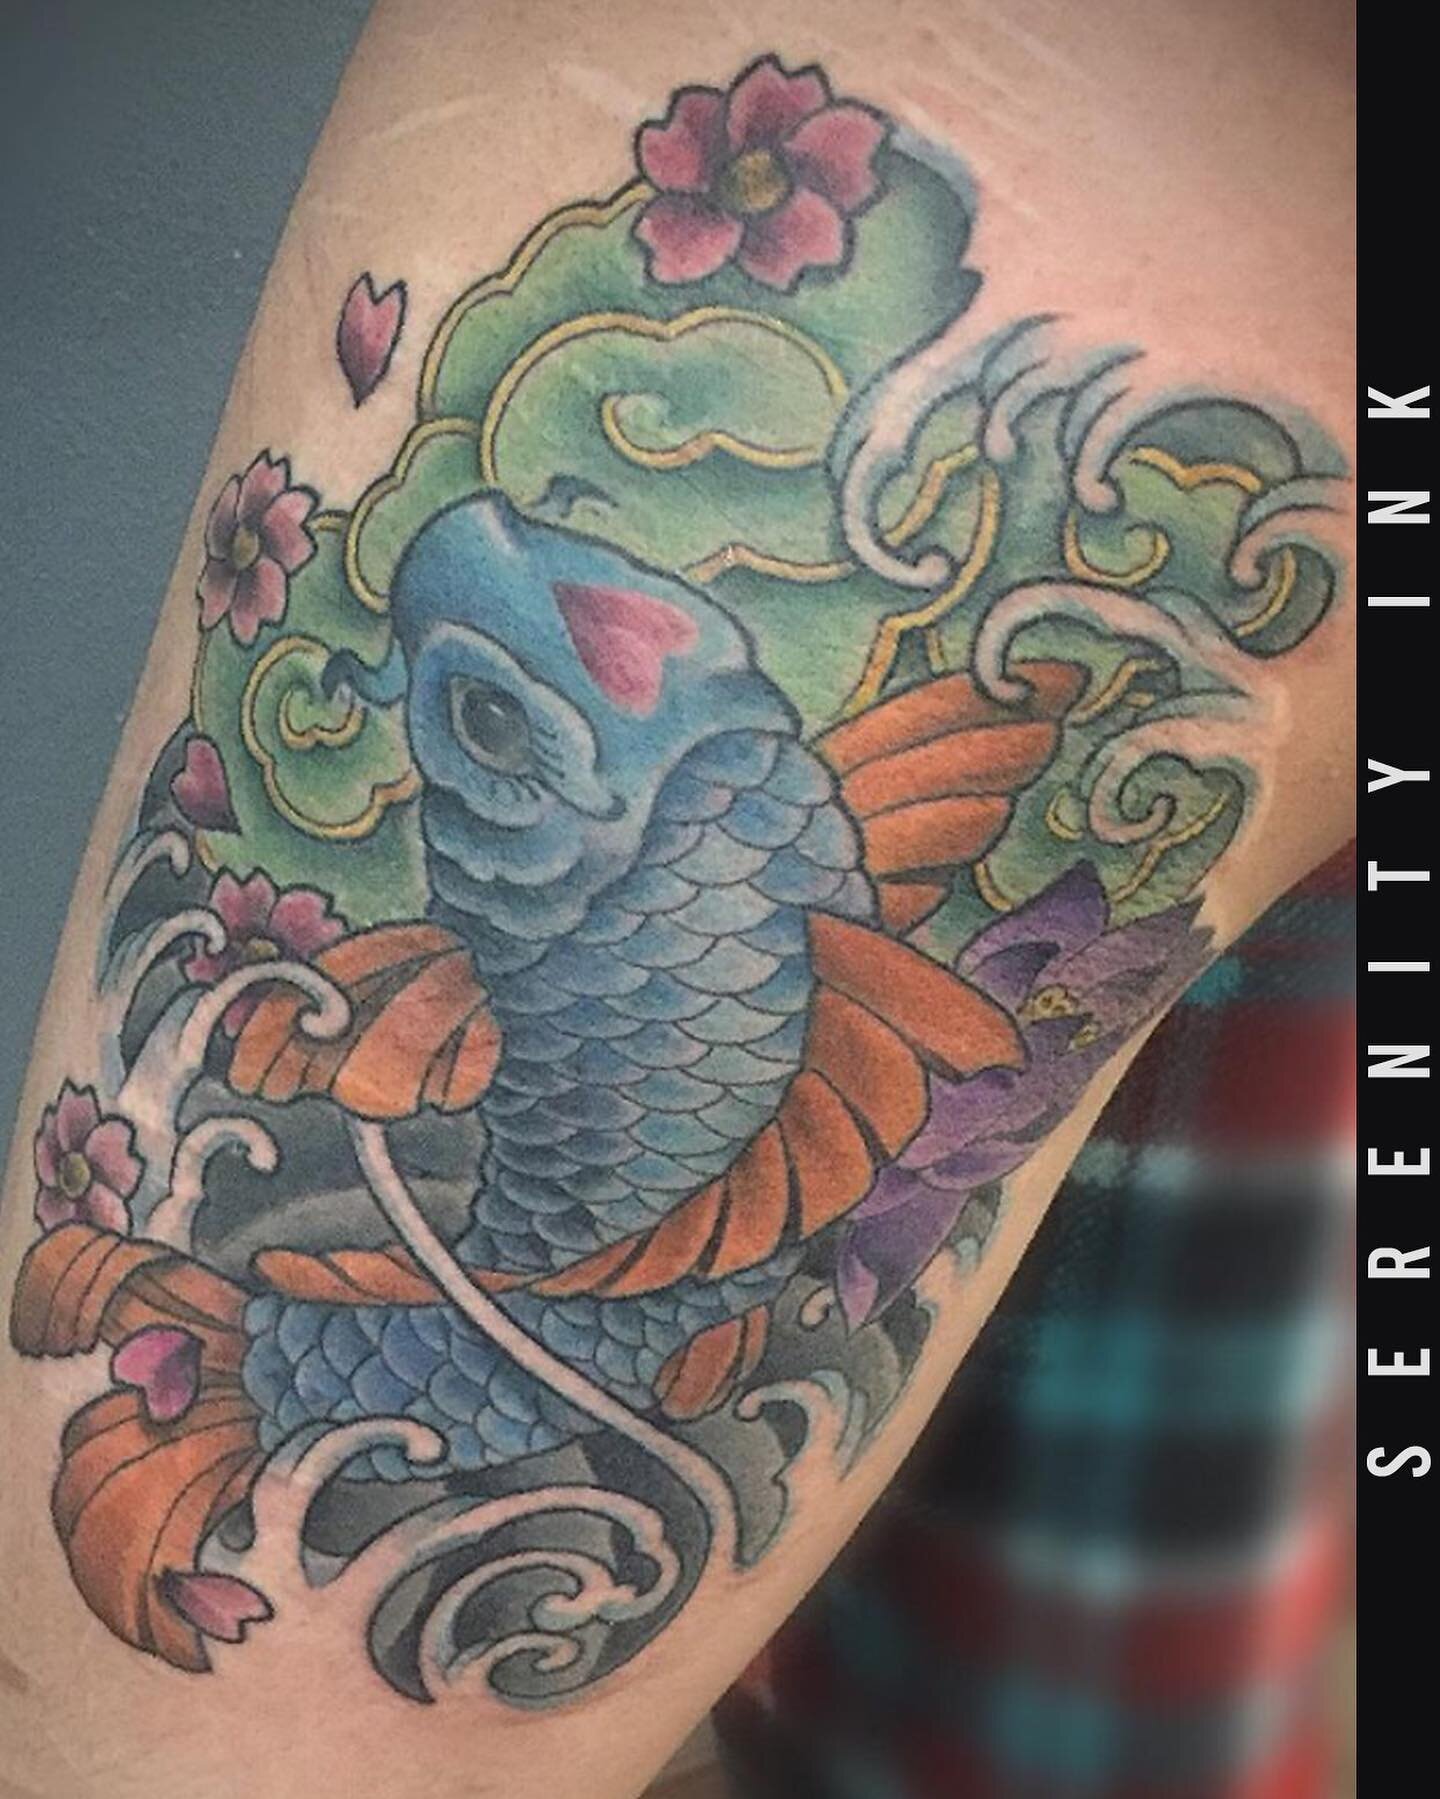 Koi fish tattoo by our artist Jason
&bull;
Artist: @tattoogigolo
&bull;
#koi #koifishtattoo #lotus #flower #tattoo #tattoos #milwaukee #wisconsin #milwaukeetattoo #serenityink #art #artnerd #tattoogigolo